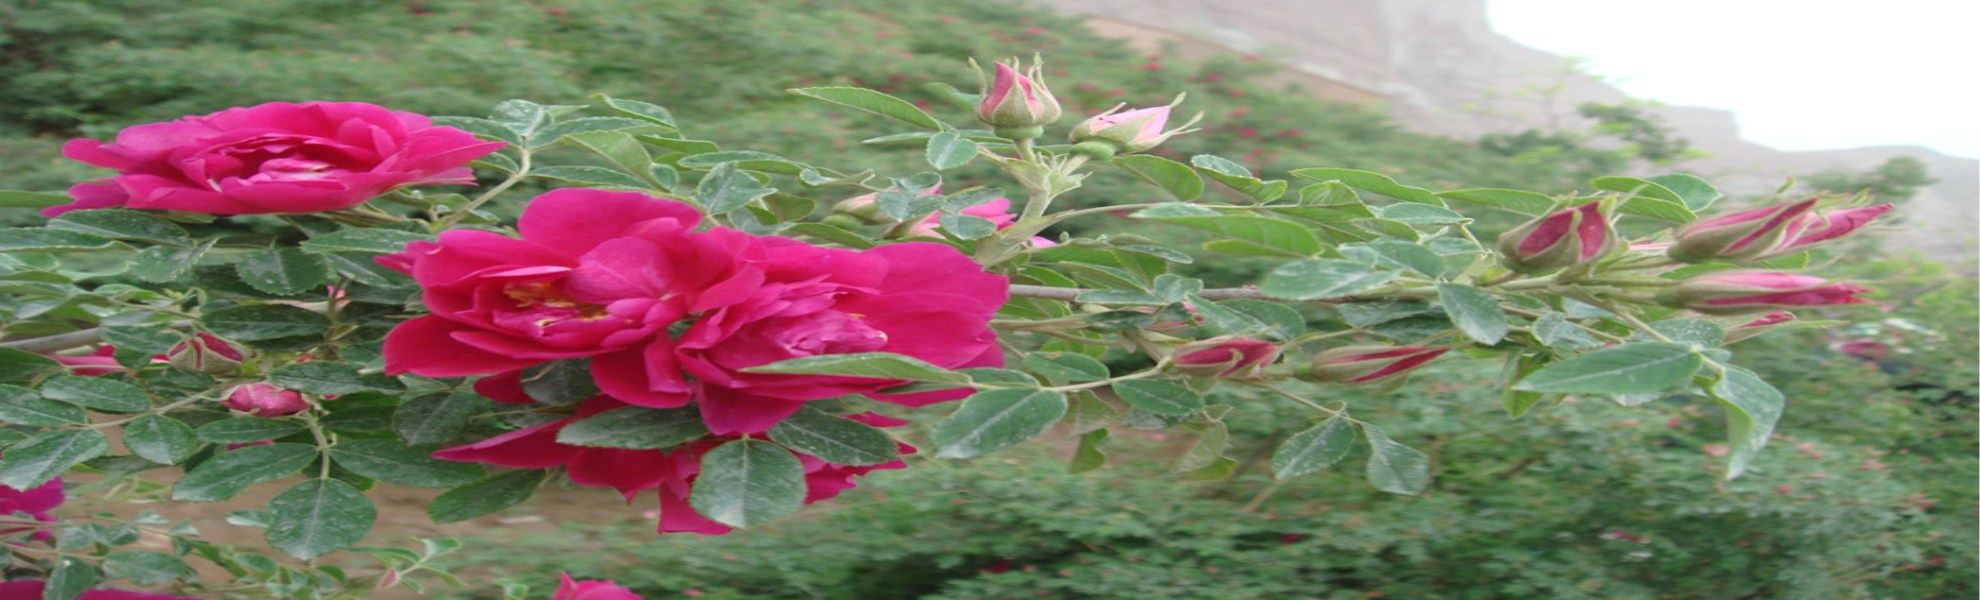 一、二年生花卉 平阴玫瑰研究所专供中天玫瑰苗